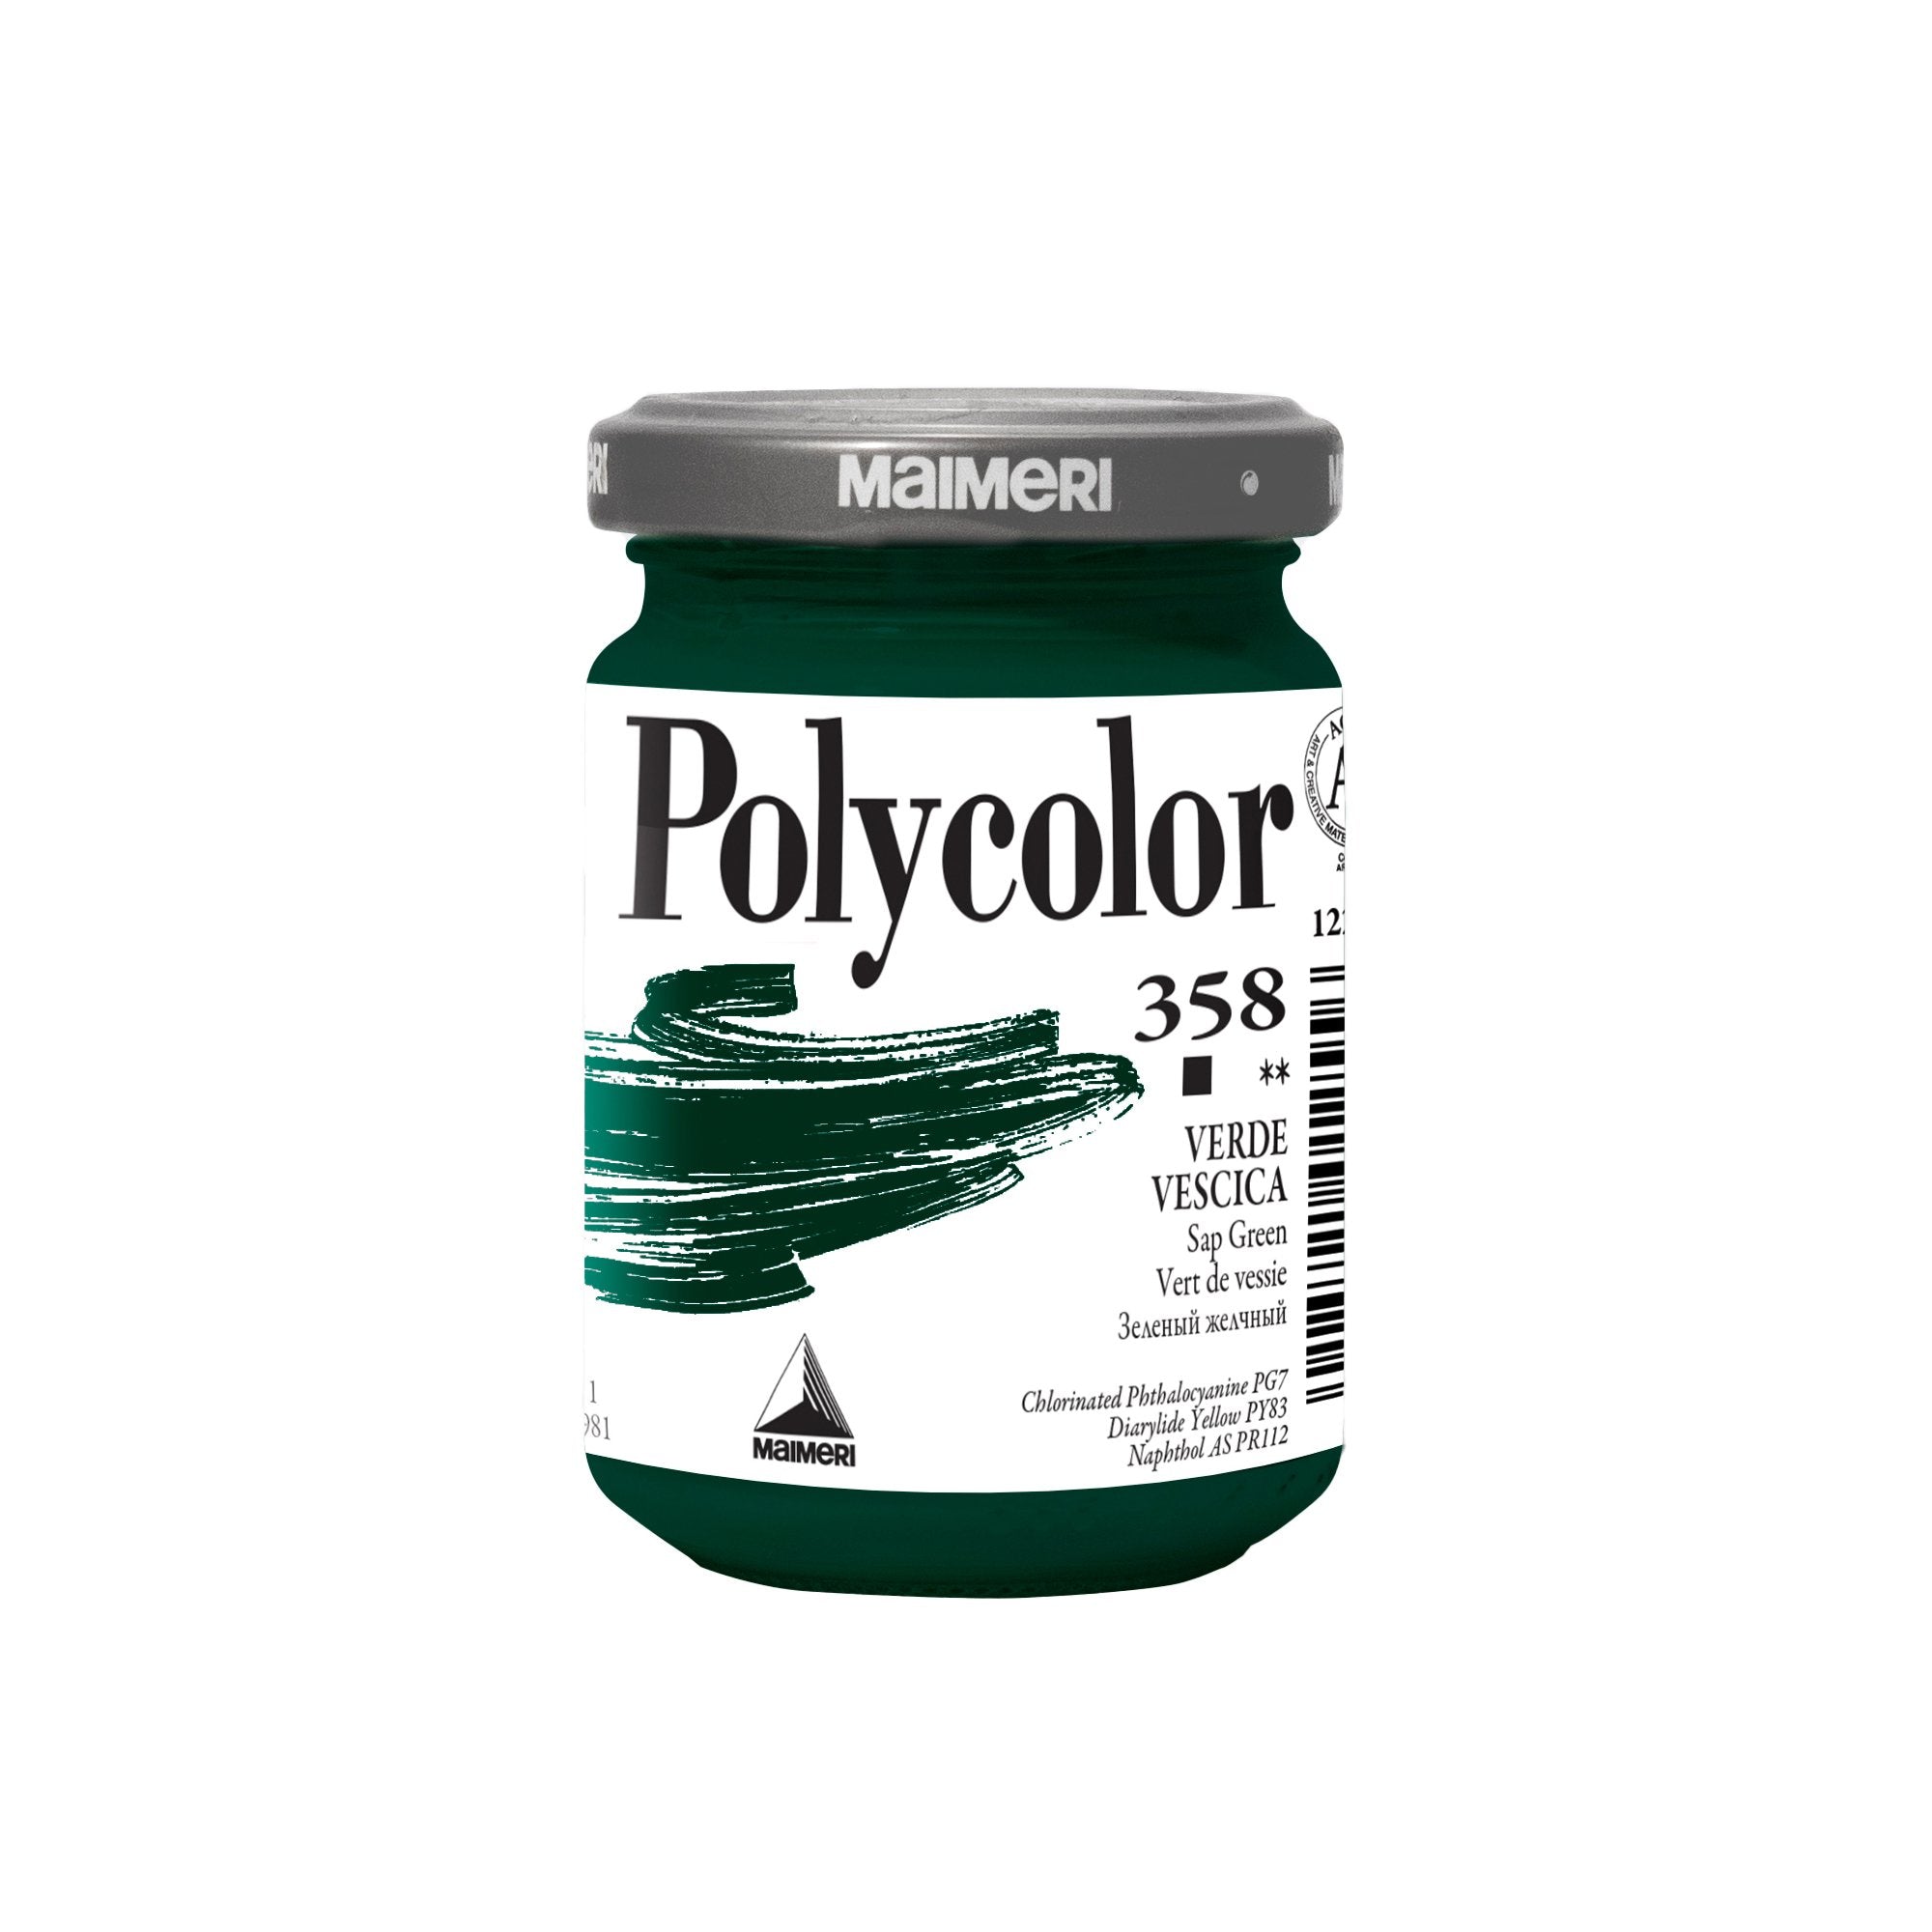 maimeri-colore-vinilico-polycolor-vasetto-140-ml-verde-vescica